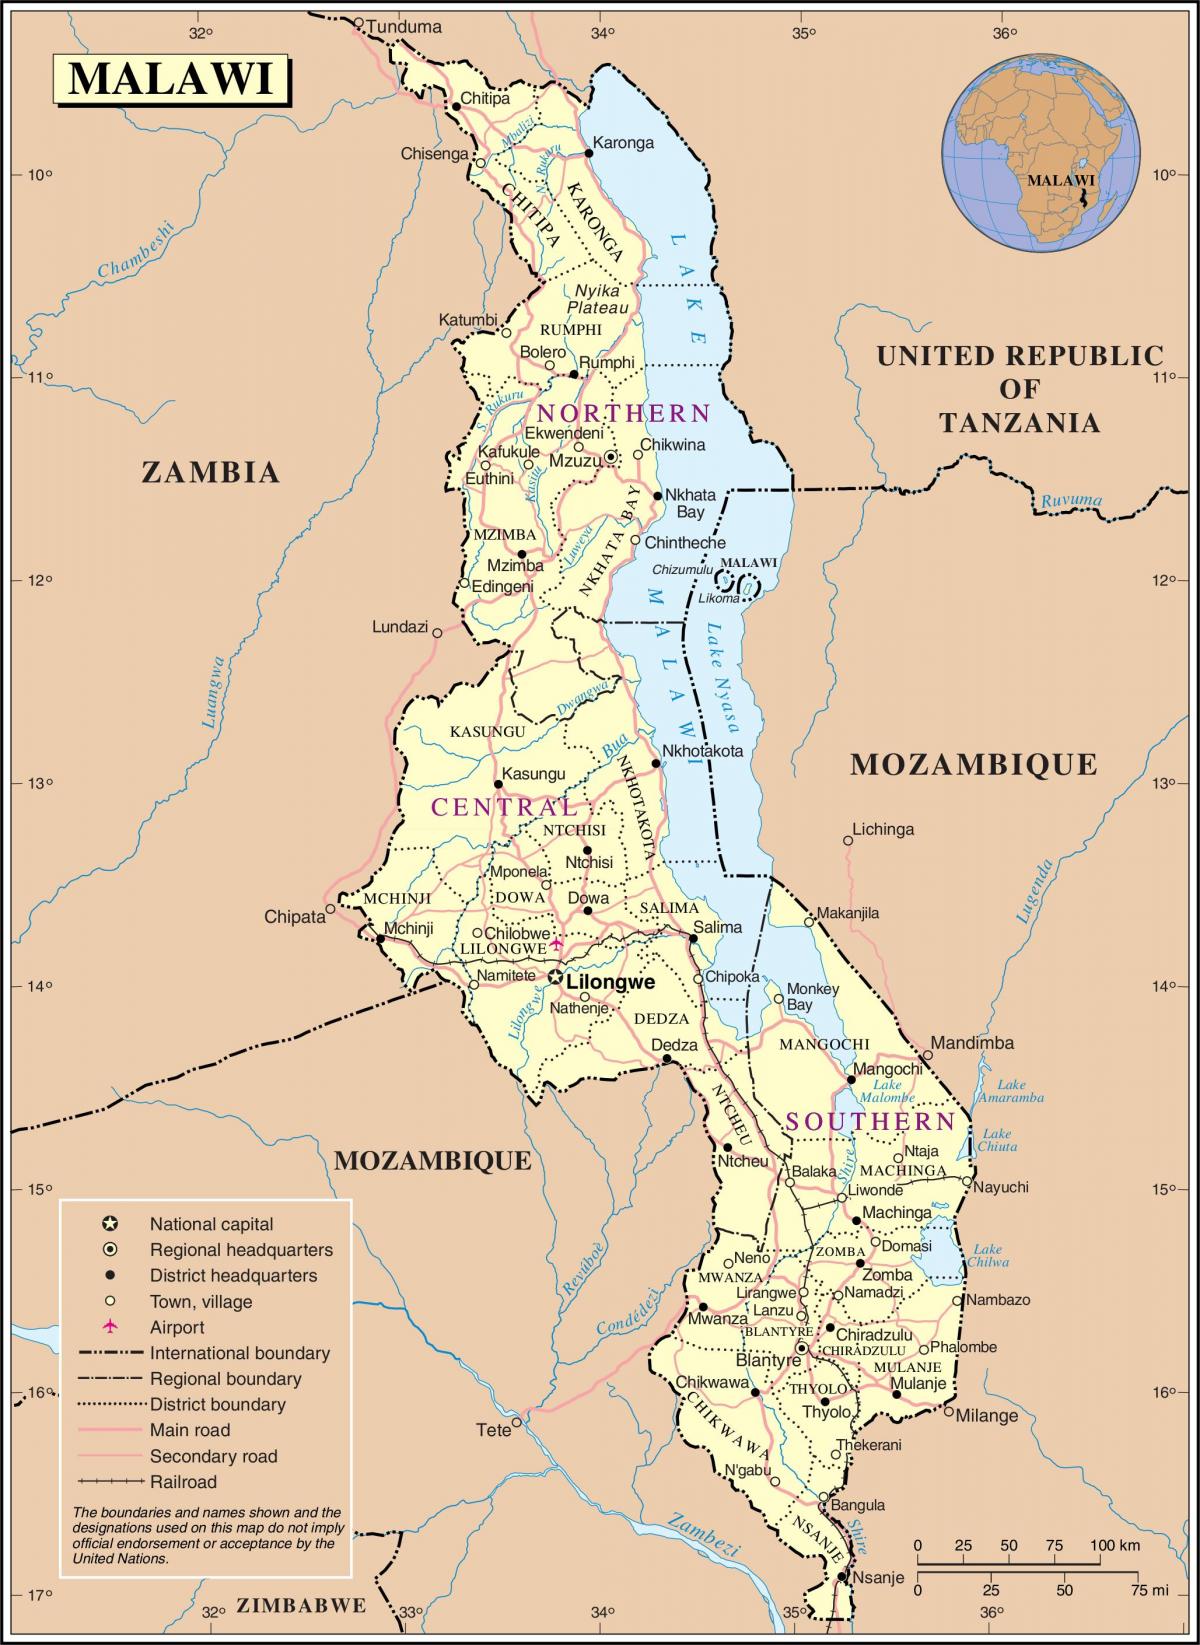 χάρτης του Μαλάουι δείχνει δρόμους